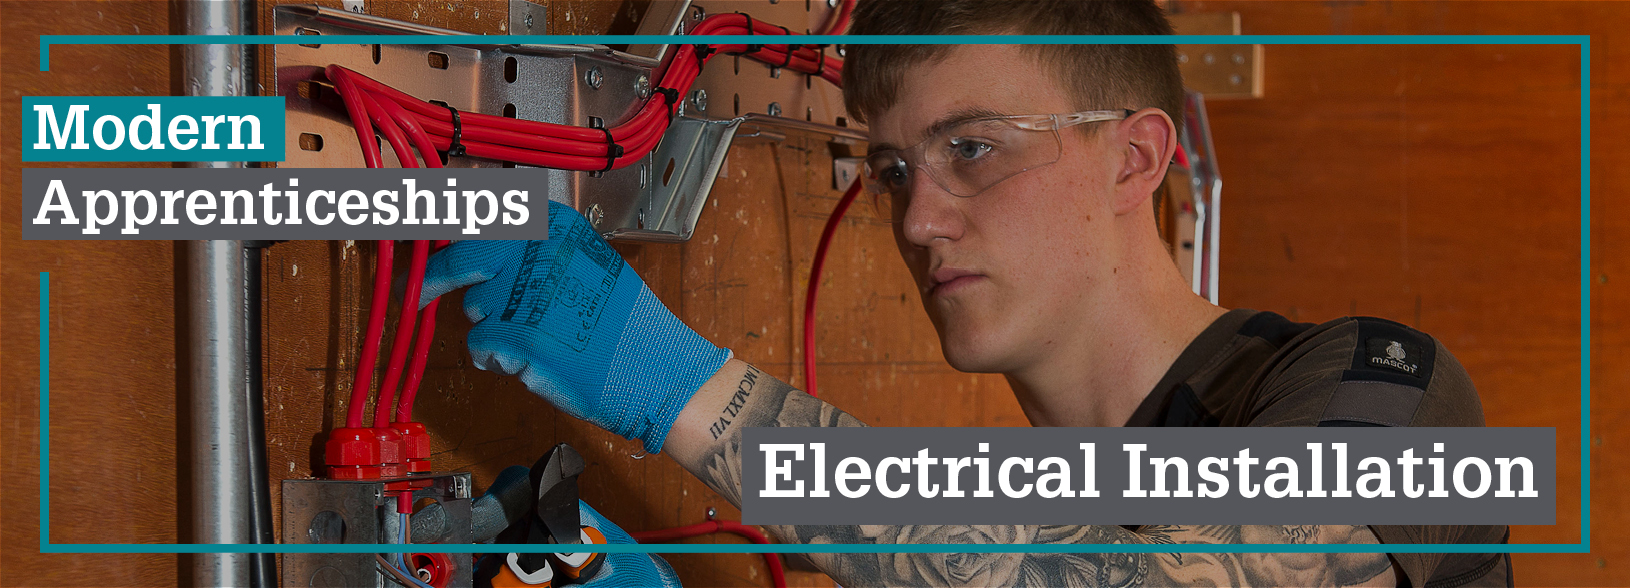 Modern Apprenticeship in Electrical Installation